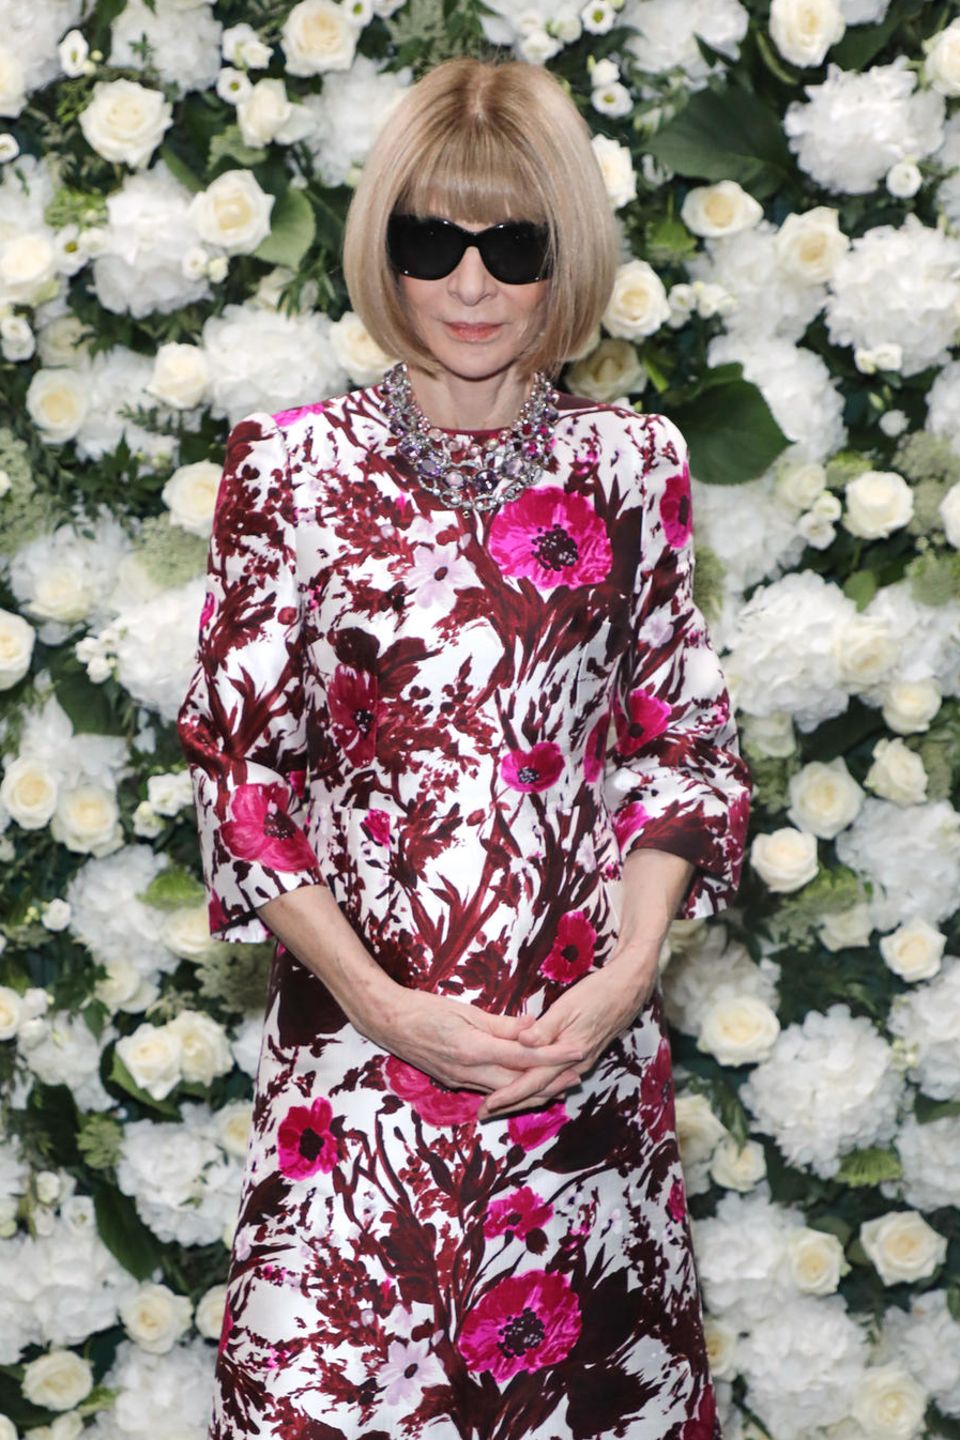 Anna Wintour besucht die Party von der britischen Vogue und Tiffany & Co. Für das besondere Event trägt die Vogue-Chefredakteurin ein rosa Kleid mit Blumenmuster.